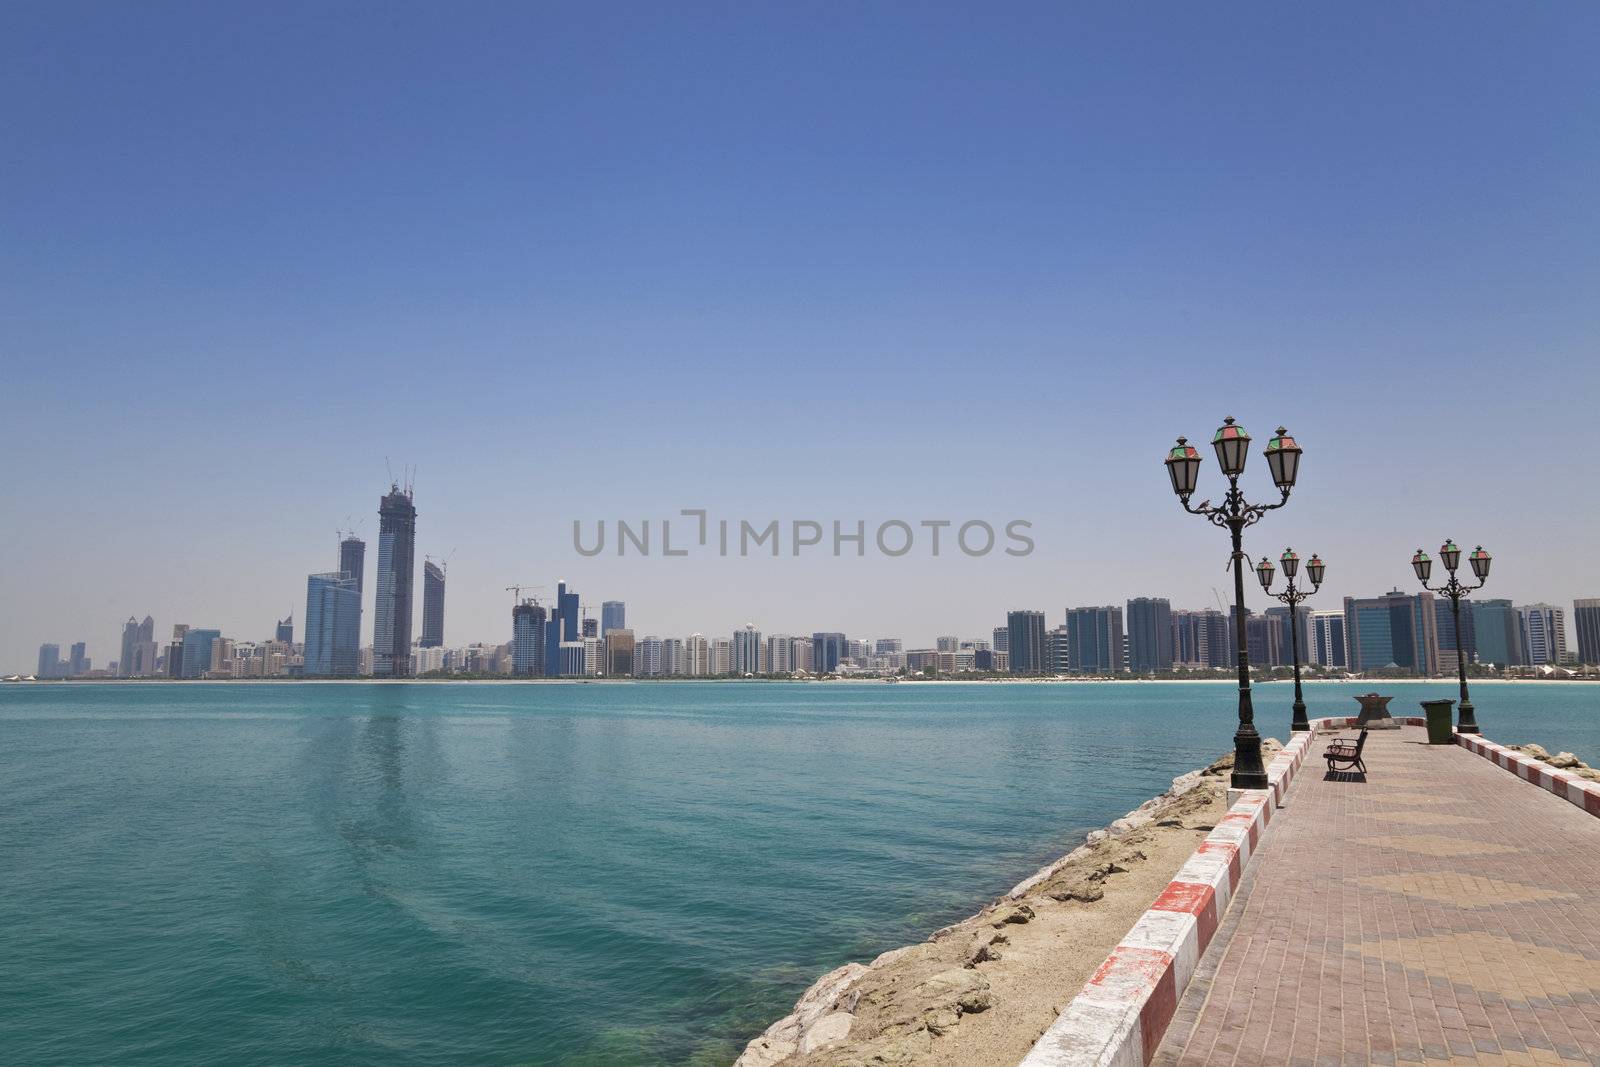 Image of Abu Dhabi skyline, United Arab Emirates.
